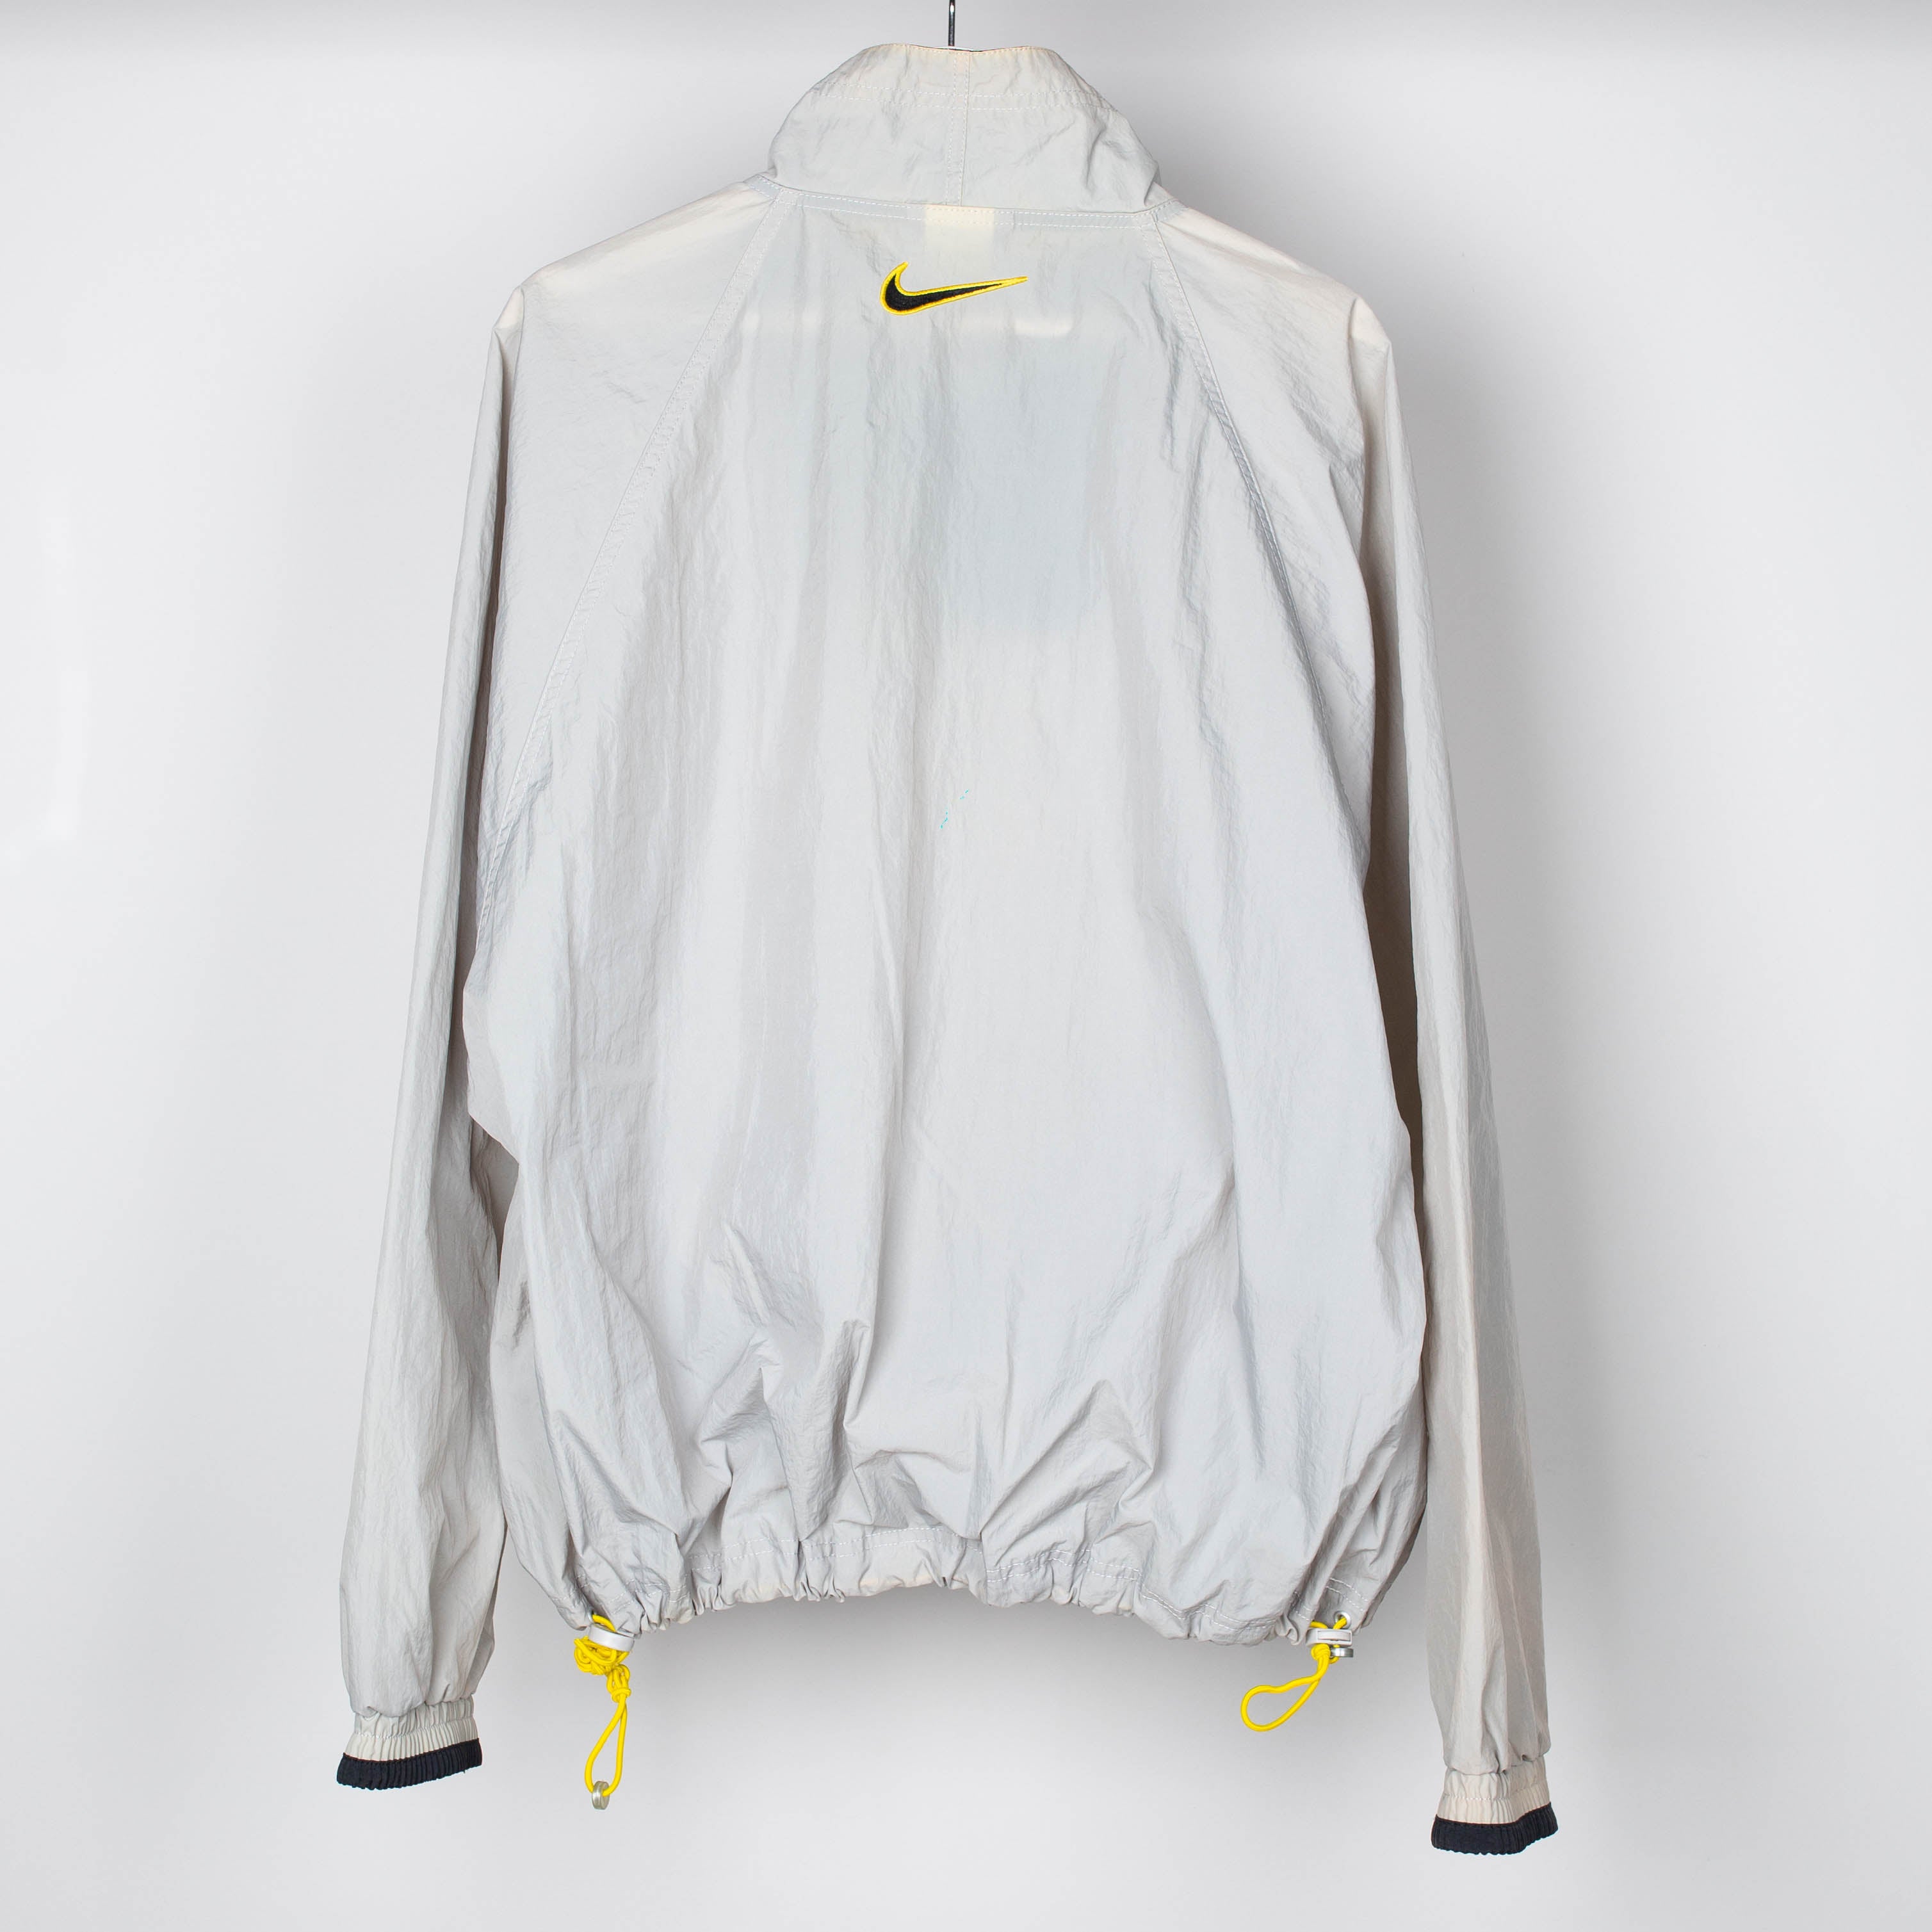 90's Nike Gray Wind breaker Jacket Size L